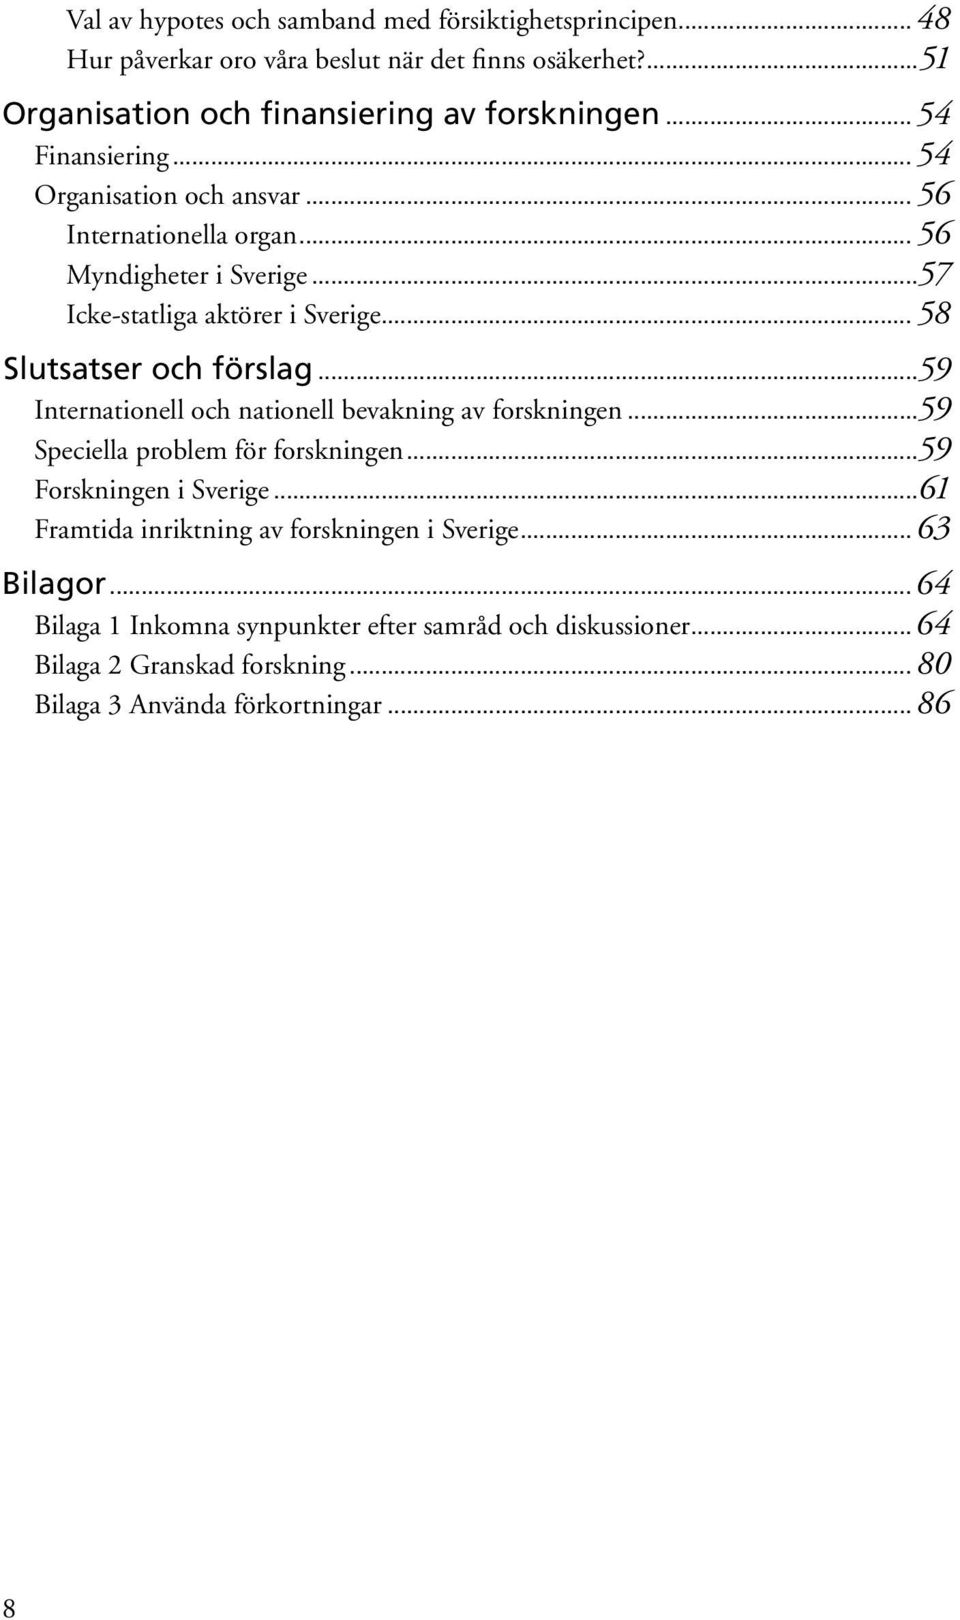 .. 58 Slutsatser och förslag...59 Internationell och nationell bevakning av forskningen...59 Speciella problem för forskningen...59 Forskningen i Sverige.